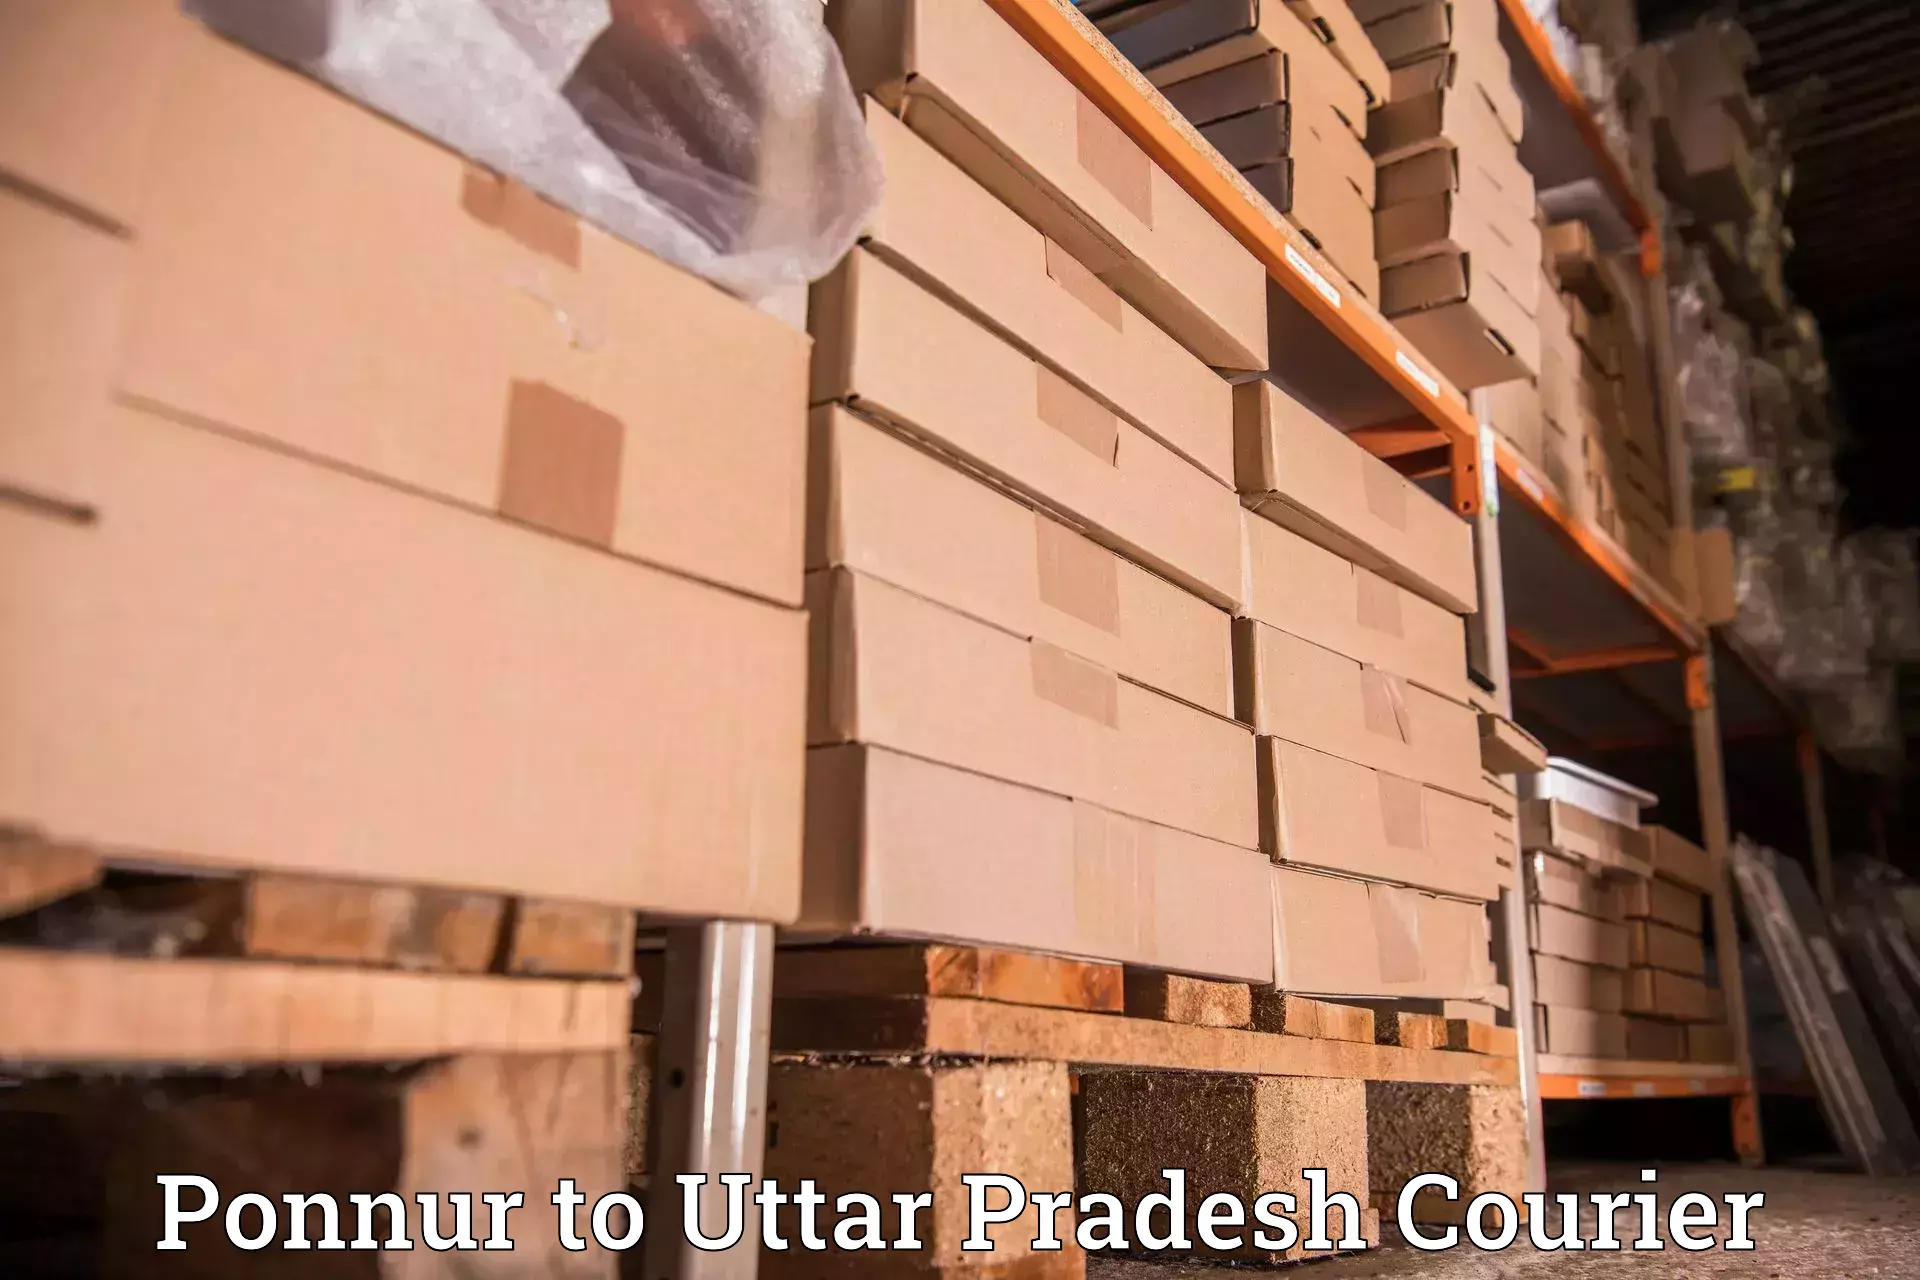 Courier insurance Ponnur to Aligarh